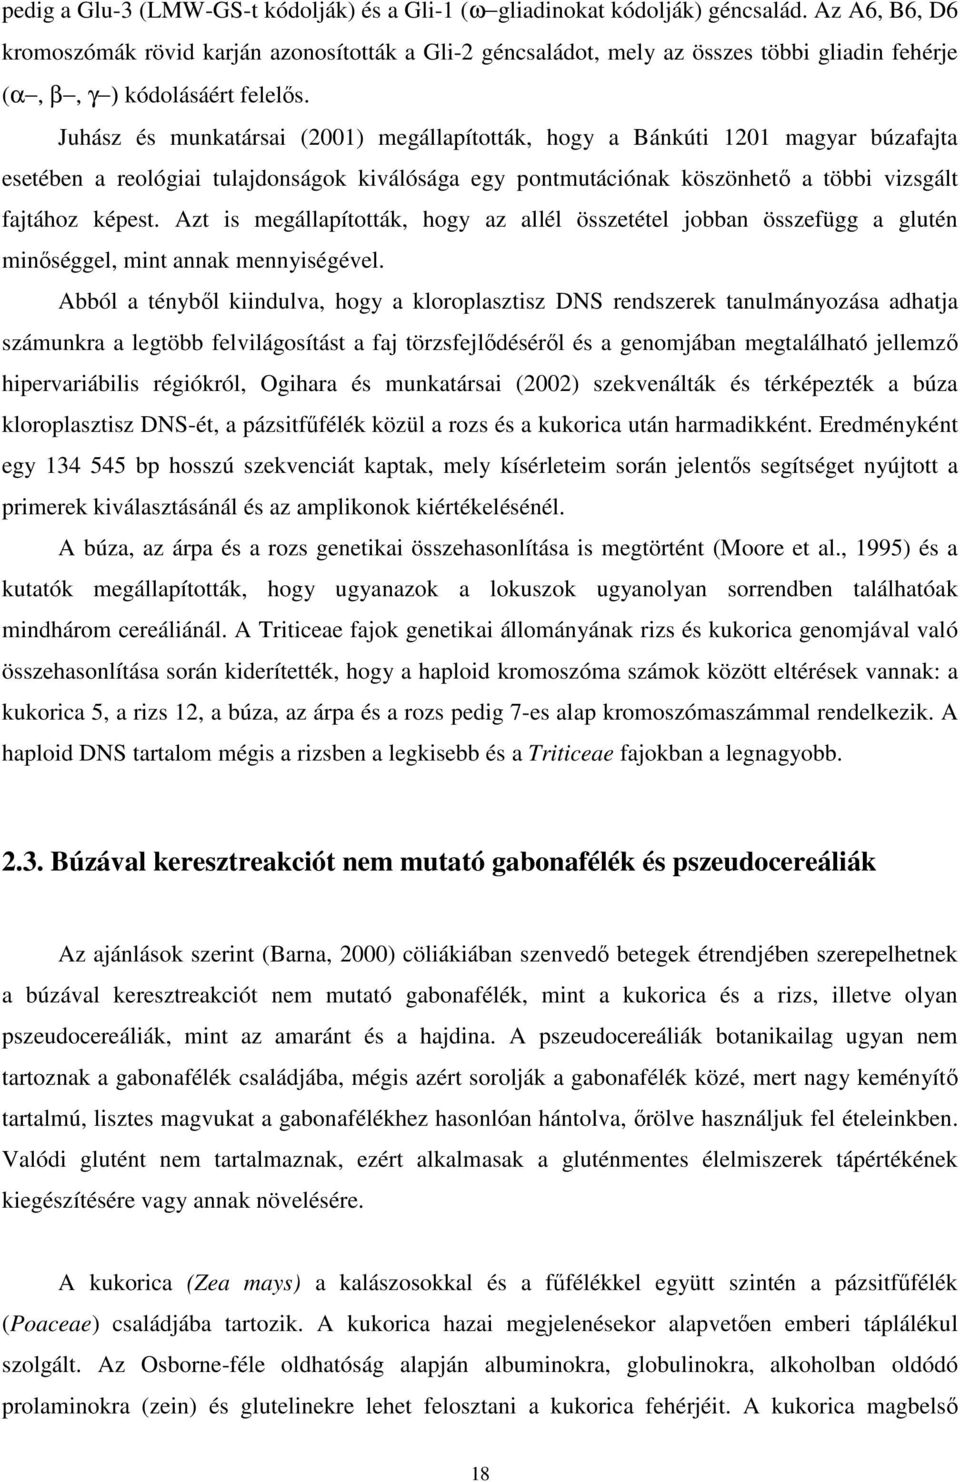 Juhász és munkatársai (2001) megállapították, hogy a Bánkúti 1201 magyar búzafajta esetében a reológiai tulajdonságok kiválósága egy pontmutációnak köszönhetı a többi vizsgált fajtához képest.